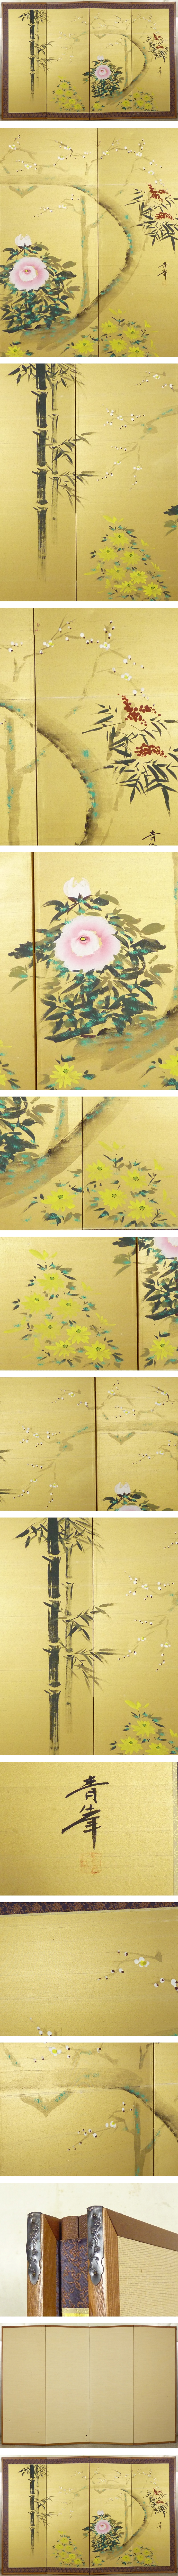 出品青峯 筆 花卉図 屏風 高さ 約115.5cm 四曲半双 絹本肉筆 金屏風 小屏風 花鳥図 花鳥、鳥獣